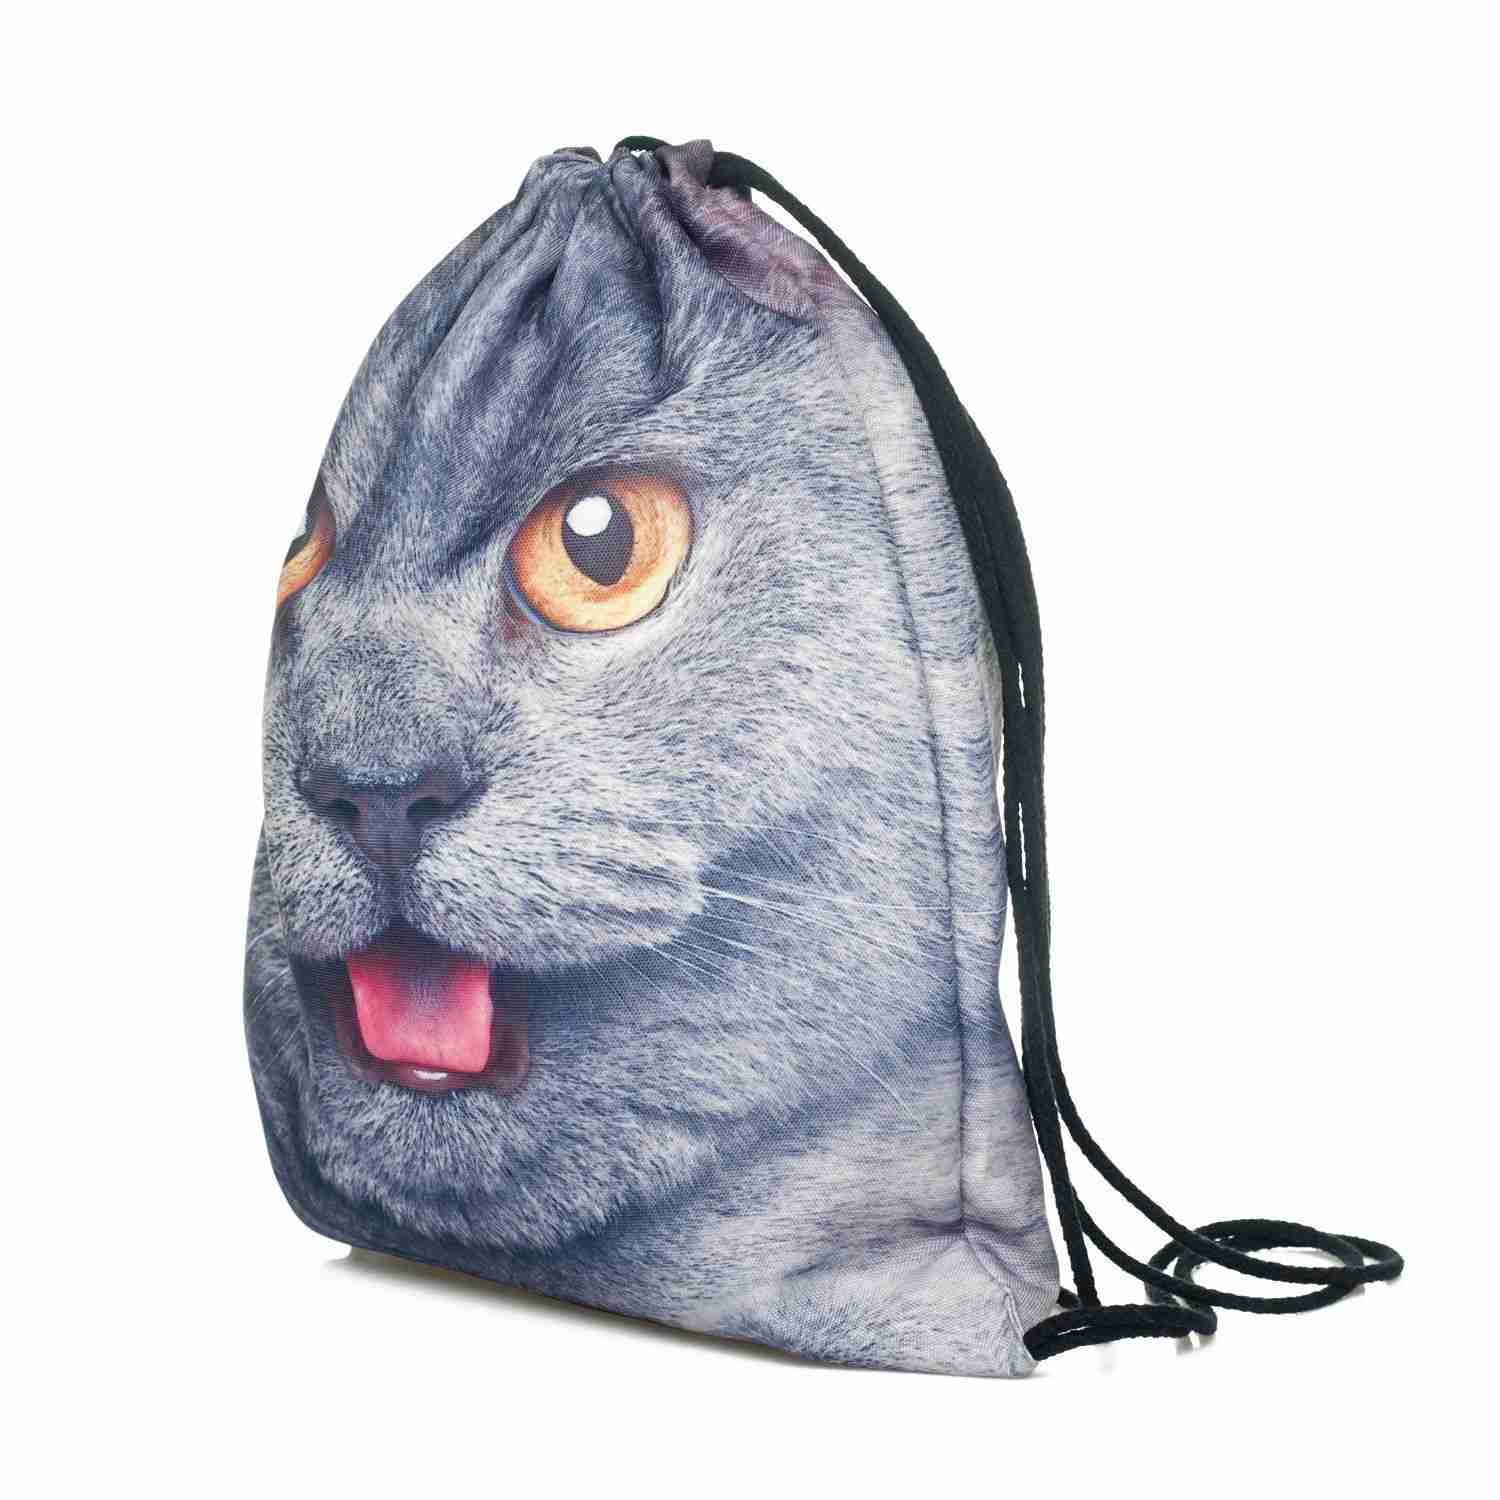 Men's Women's Kids bag Teenage Drawstring Bag Shoulder School Backpack Rucksack backpack String Travel Gym(cat) - ebowsos